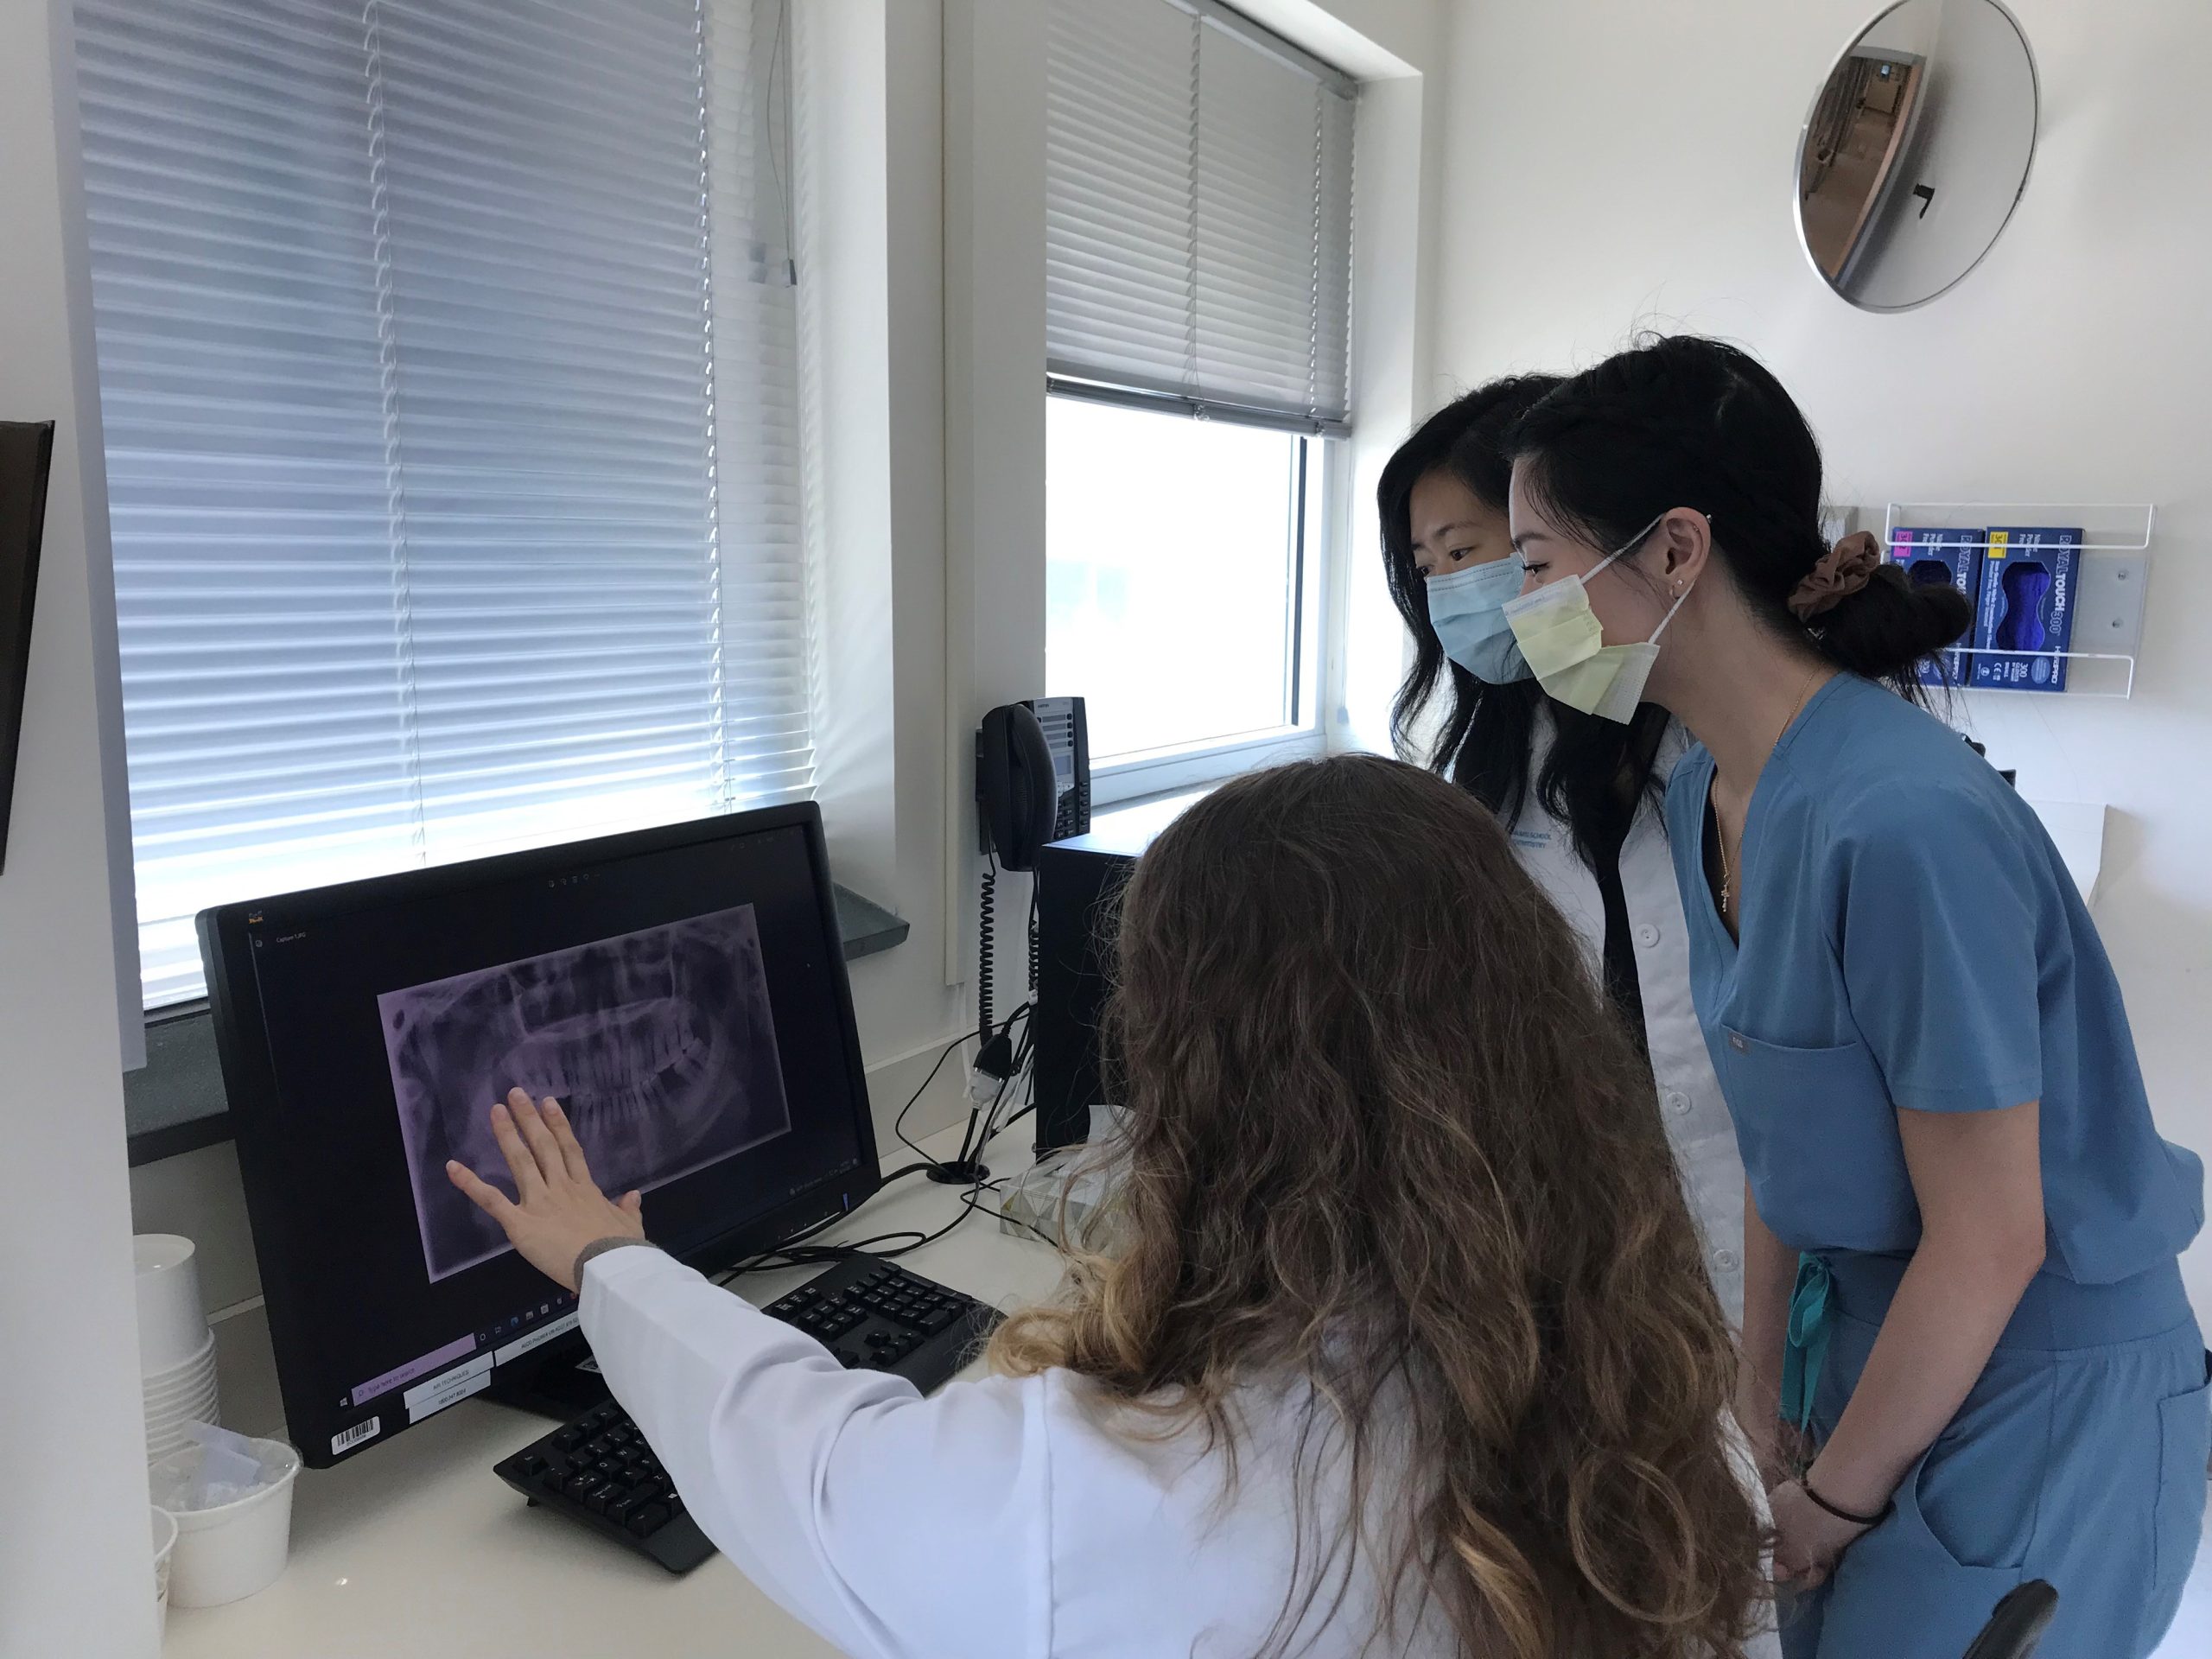 students looking at radiology image